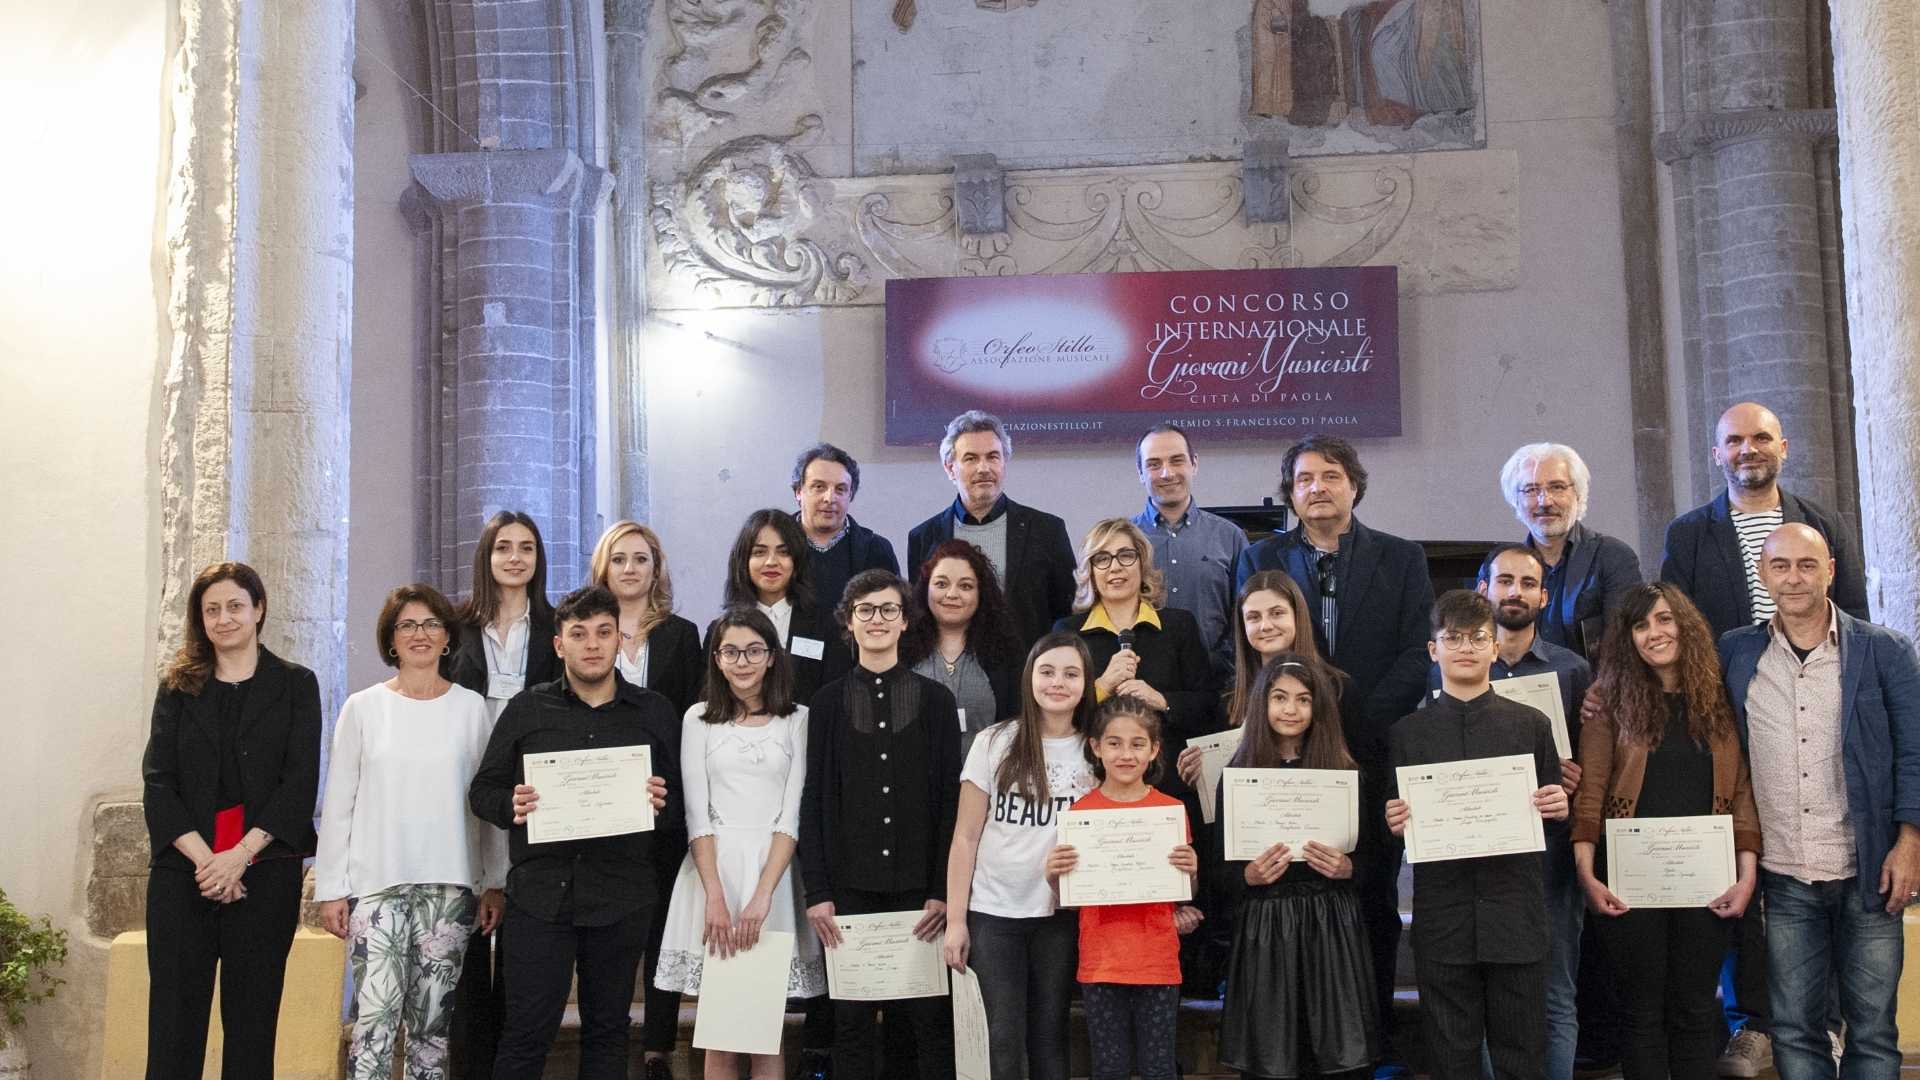 Grande successo per il XVII Concorso Internazionale Giovani Musicisti Città di Paola